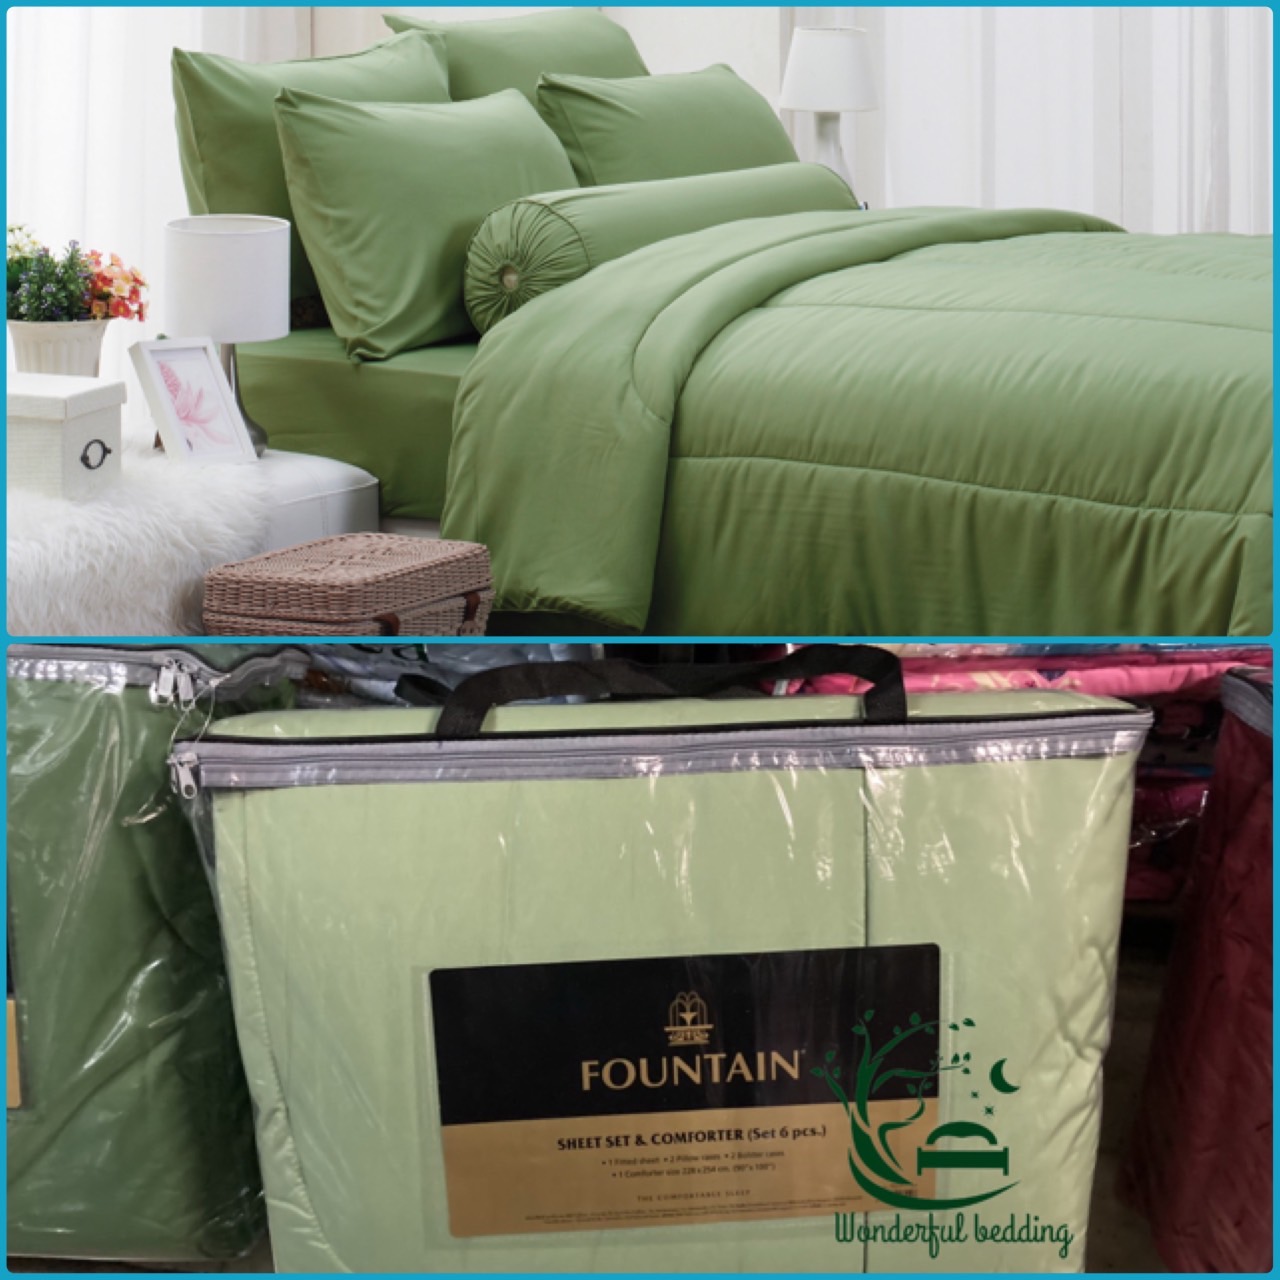 FOUNTAIN ผ้านวม + ชุดผ้าปู ผ้าปู ที่นอน แท้ 100% FTC สีพื้น เขียว Green Gray เทา ขนาด 3.5 5 6ฟุต ชุดเครื่องนอน ผ้านวม ผ้าปูที่นอน wonderful bedding  สี → Green2ขนาดสินค้า 6 ฟุต